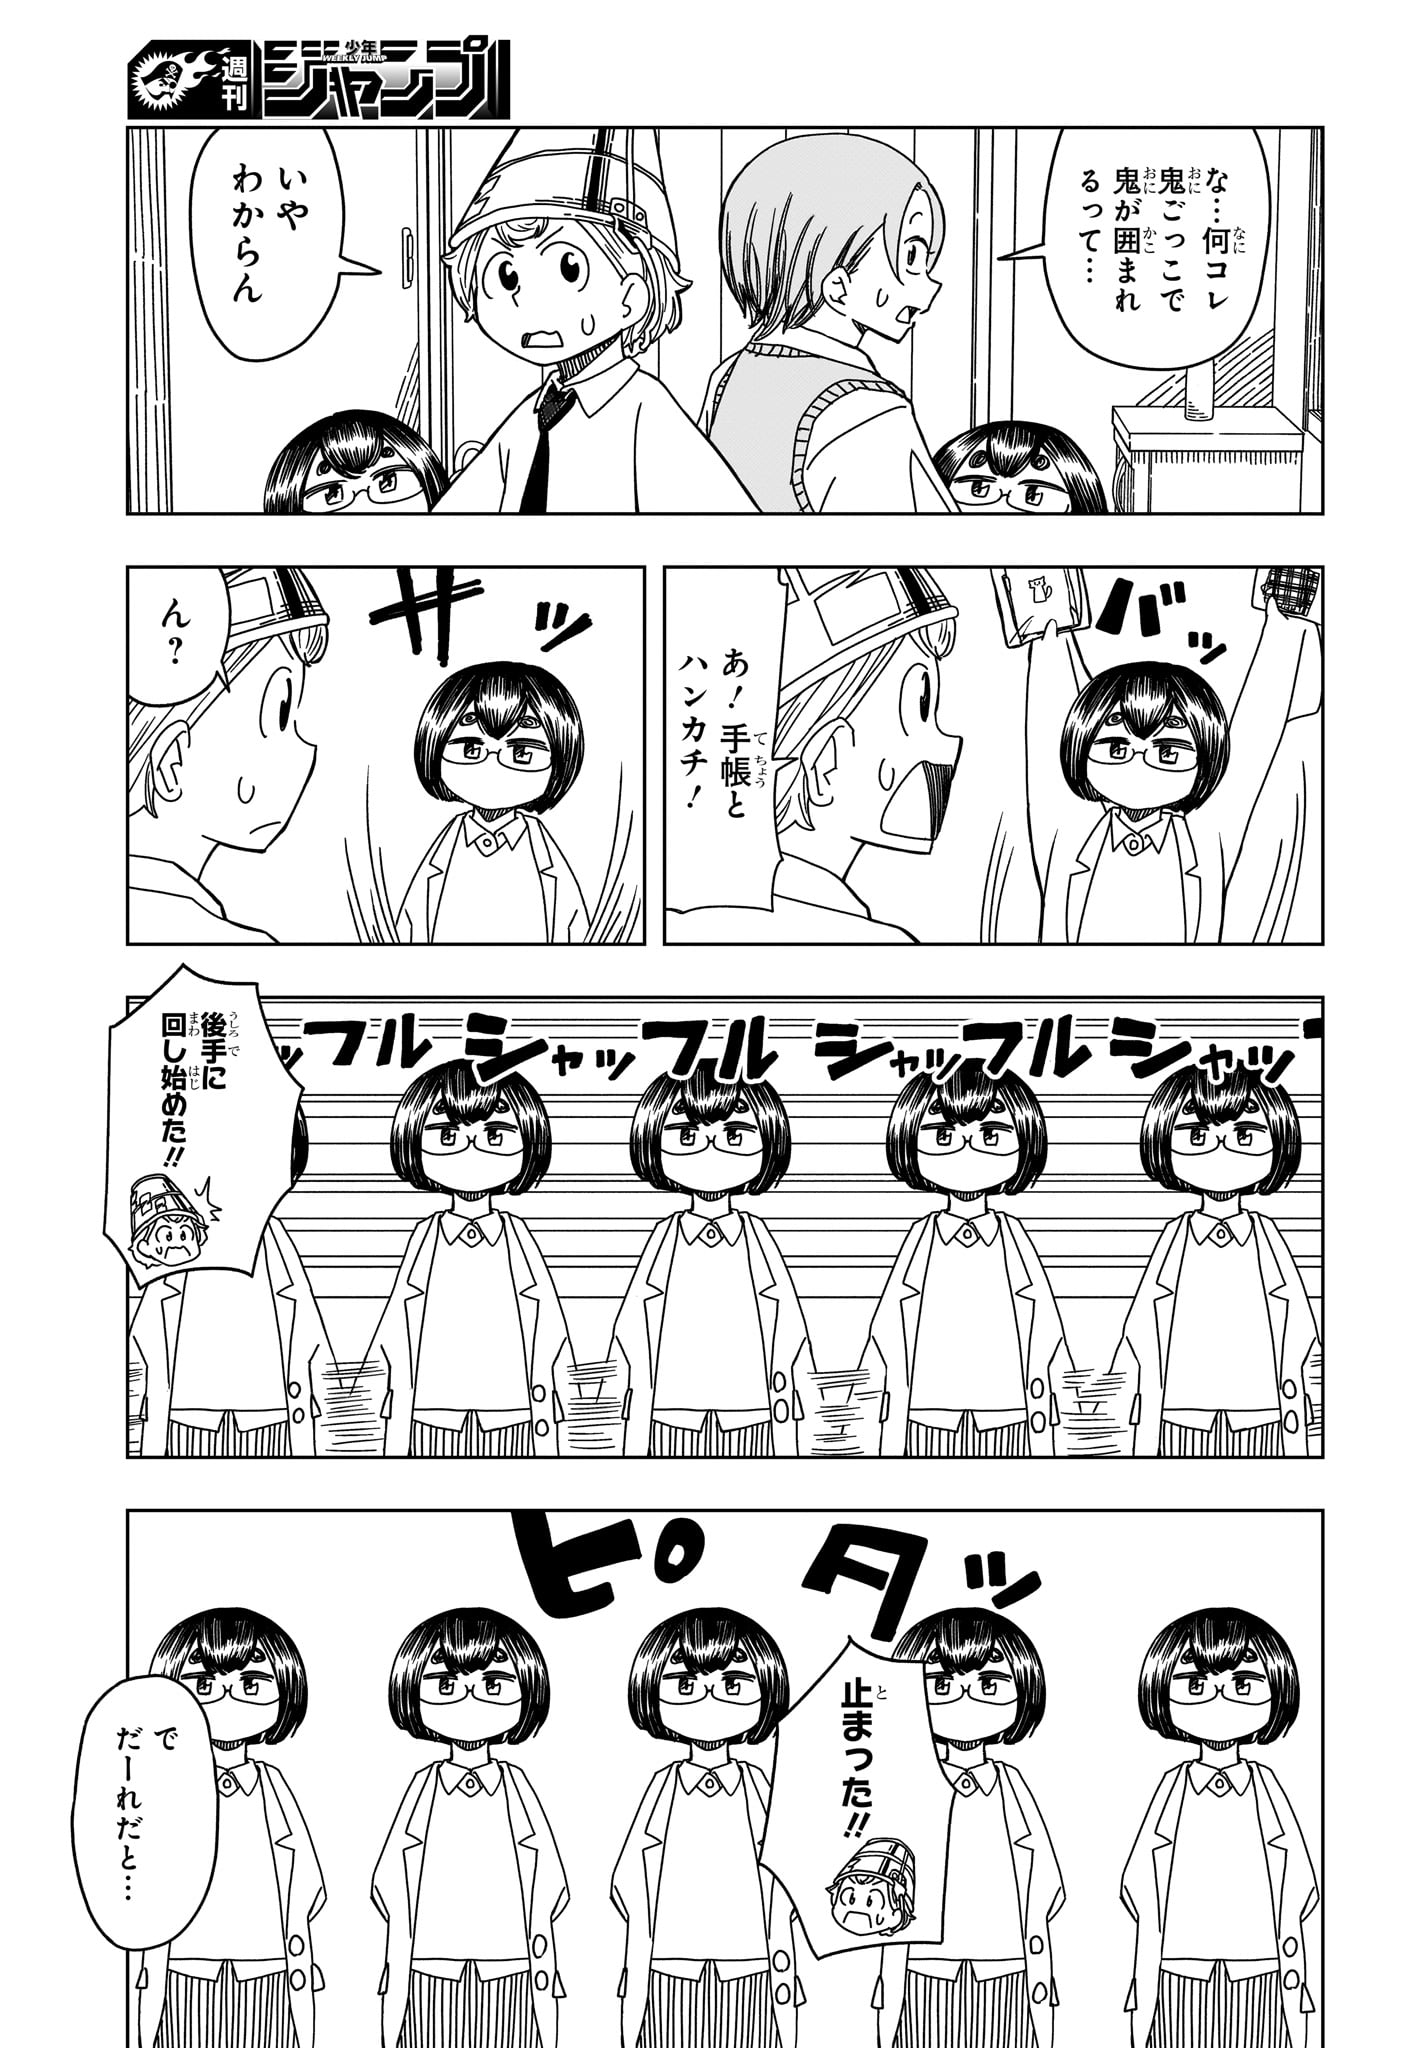 Saikuru Biyori - Chapter 4 - Page 11